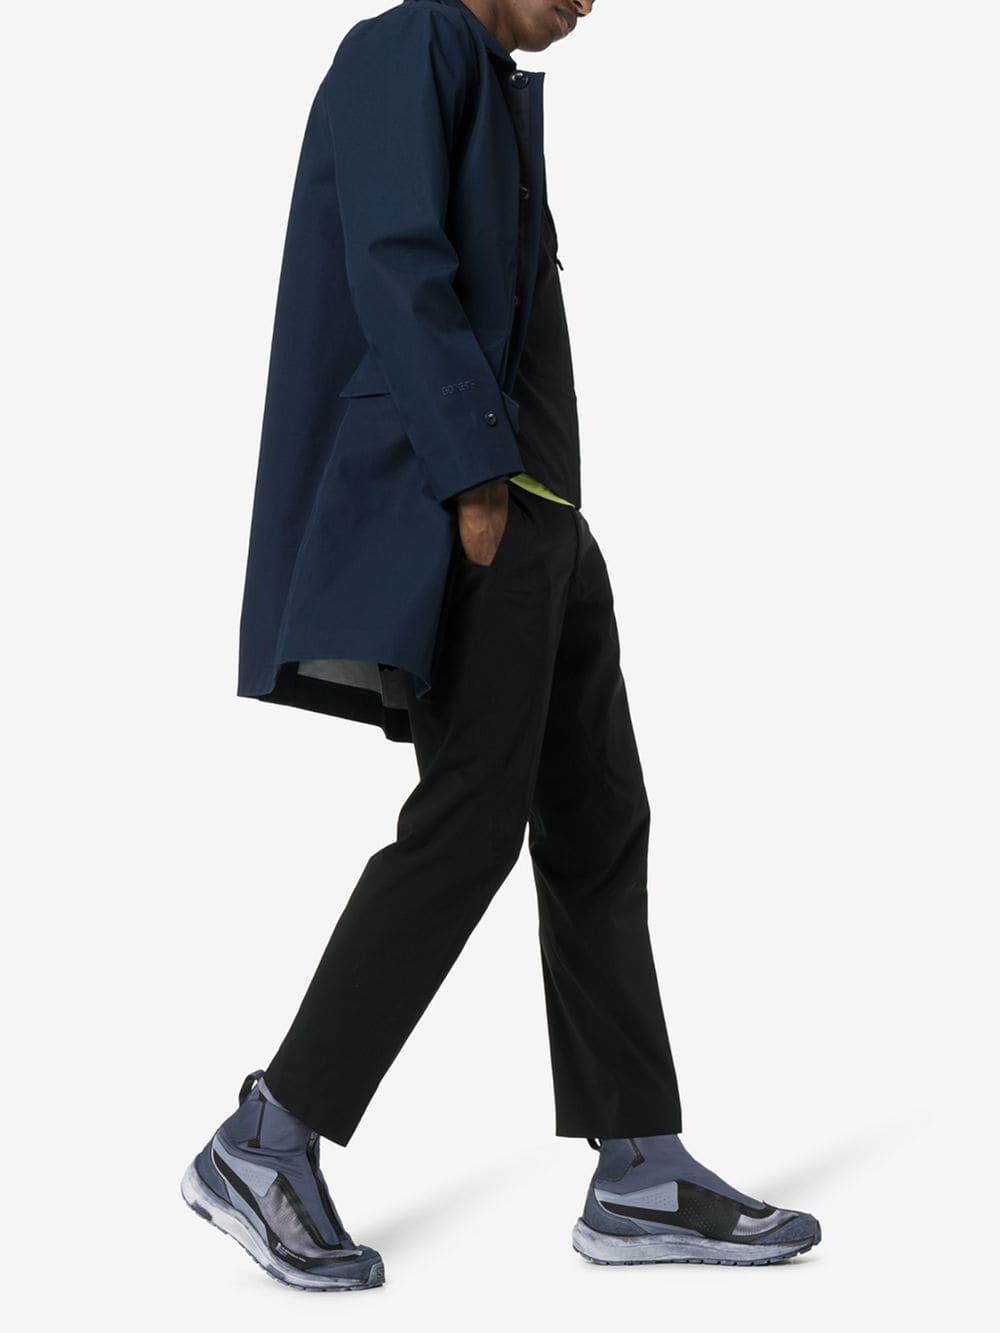 Salomon Lab X Boris Bidjan Saberi Grey Bamba 2 High-top Sneakers in Gray  for Men | Lyst